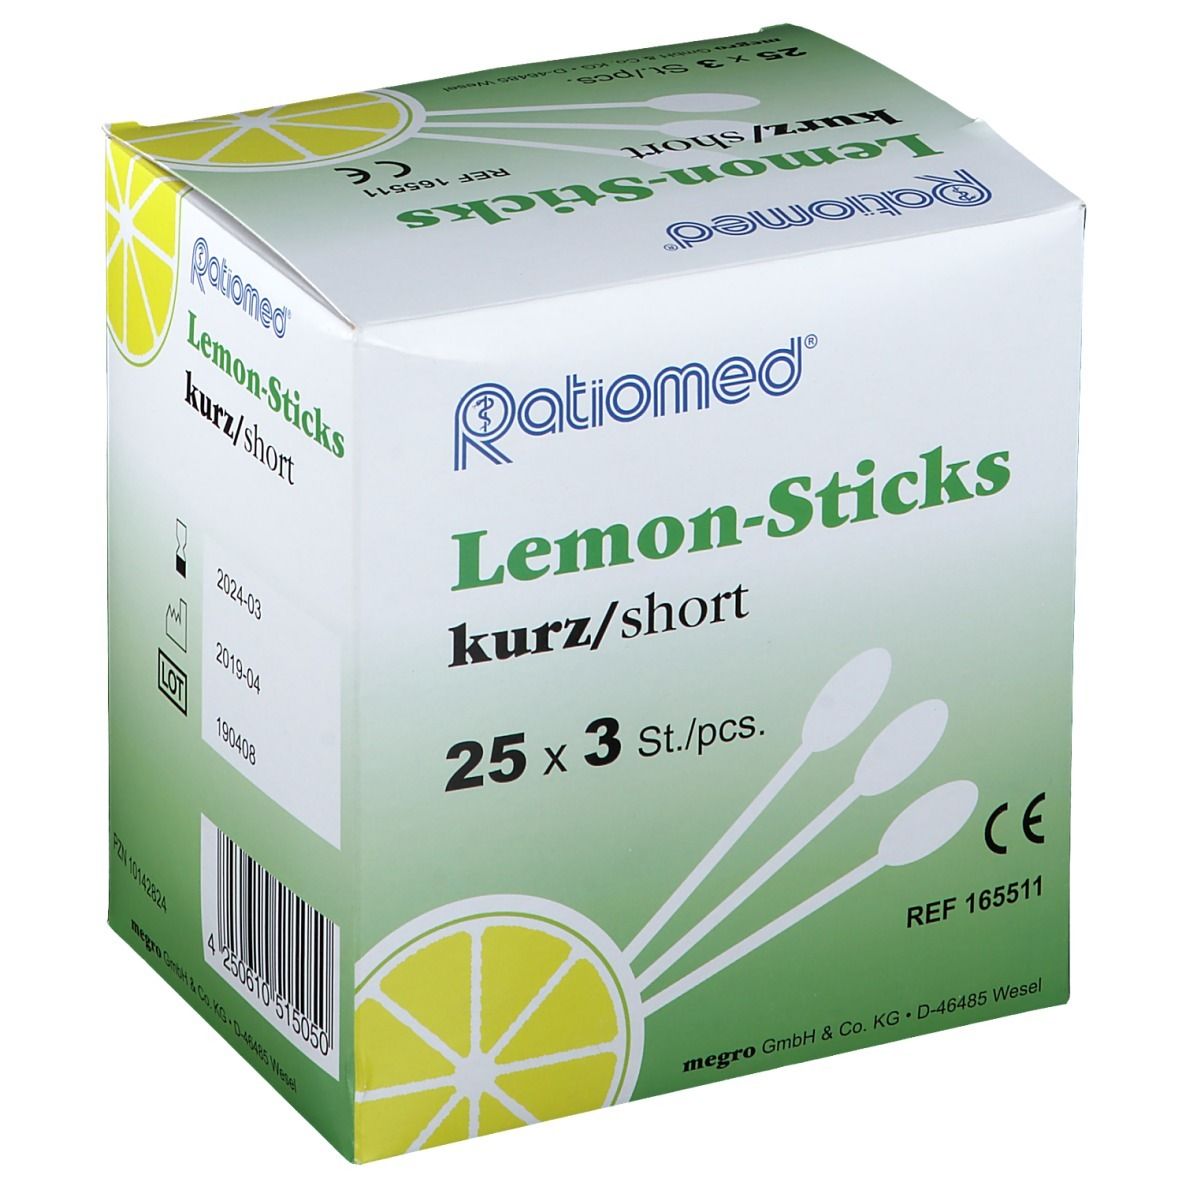 Lemon-Sticks kurz